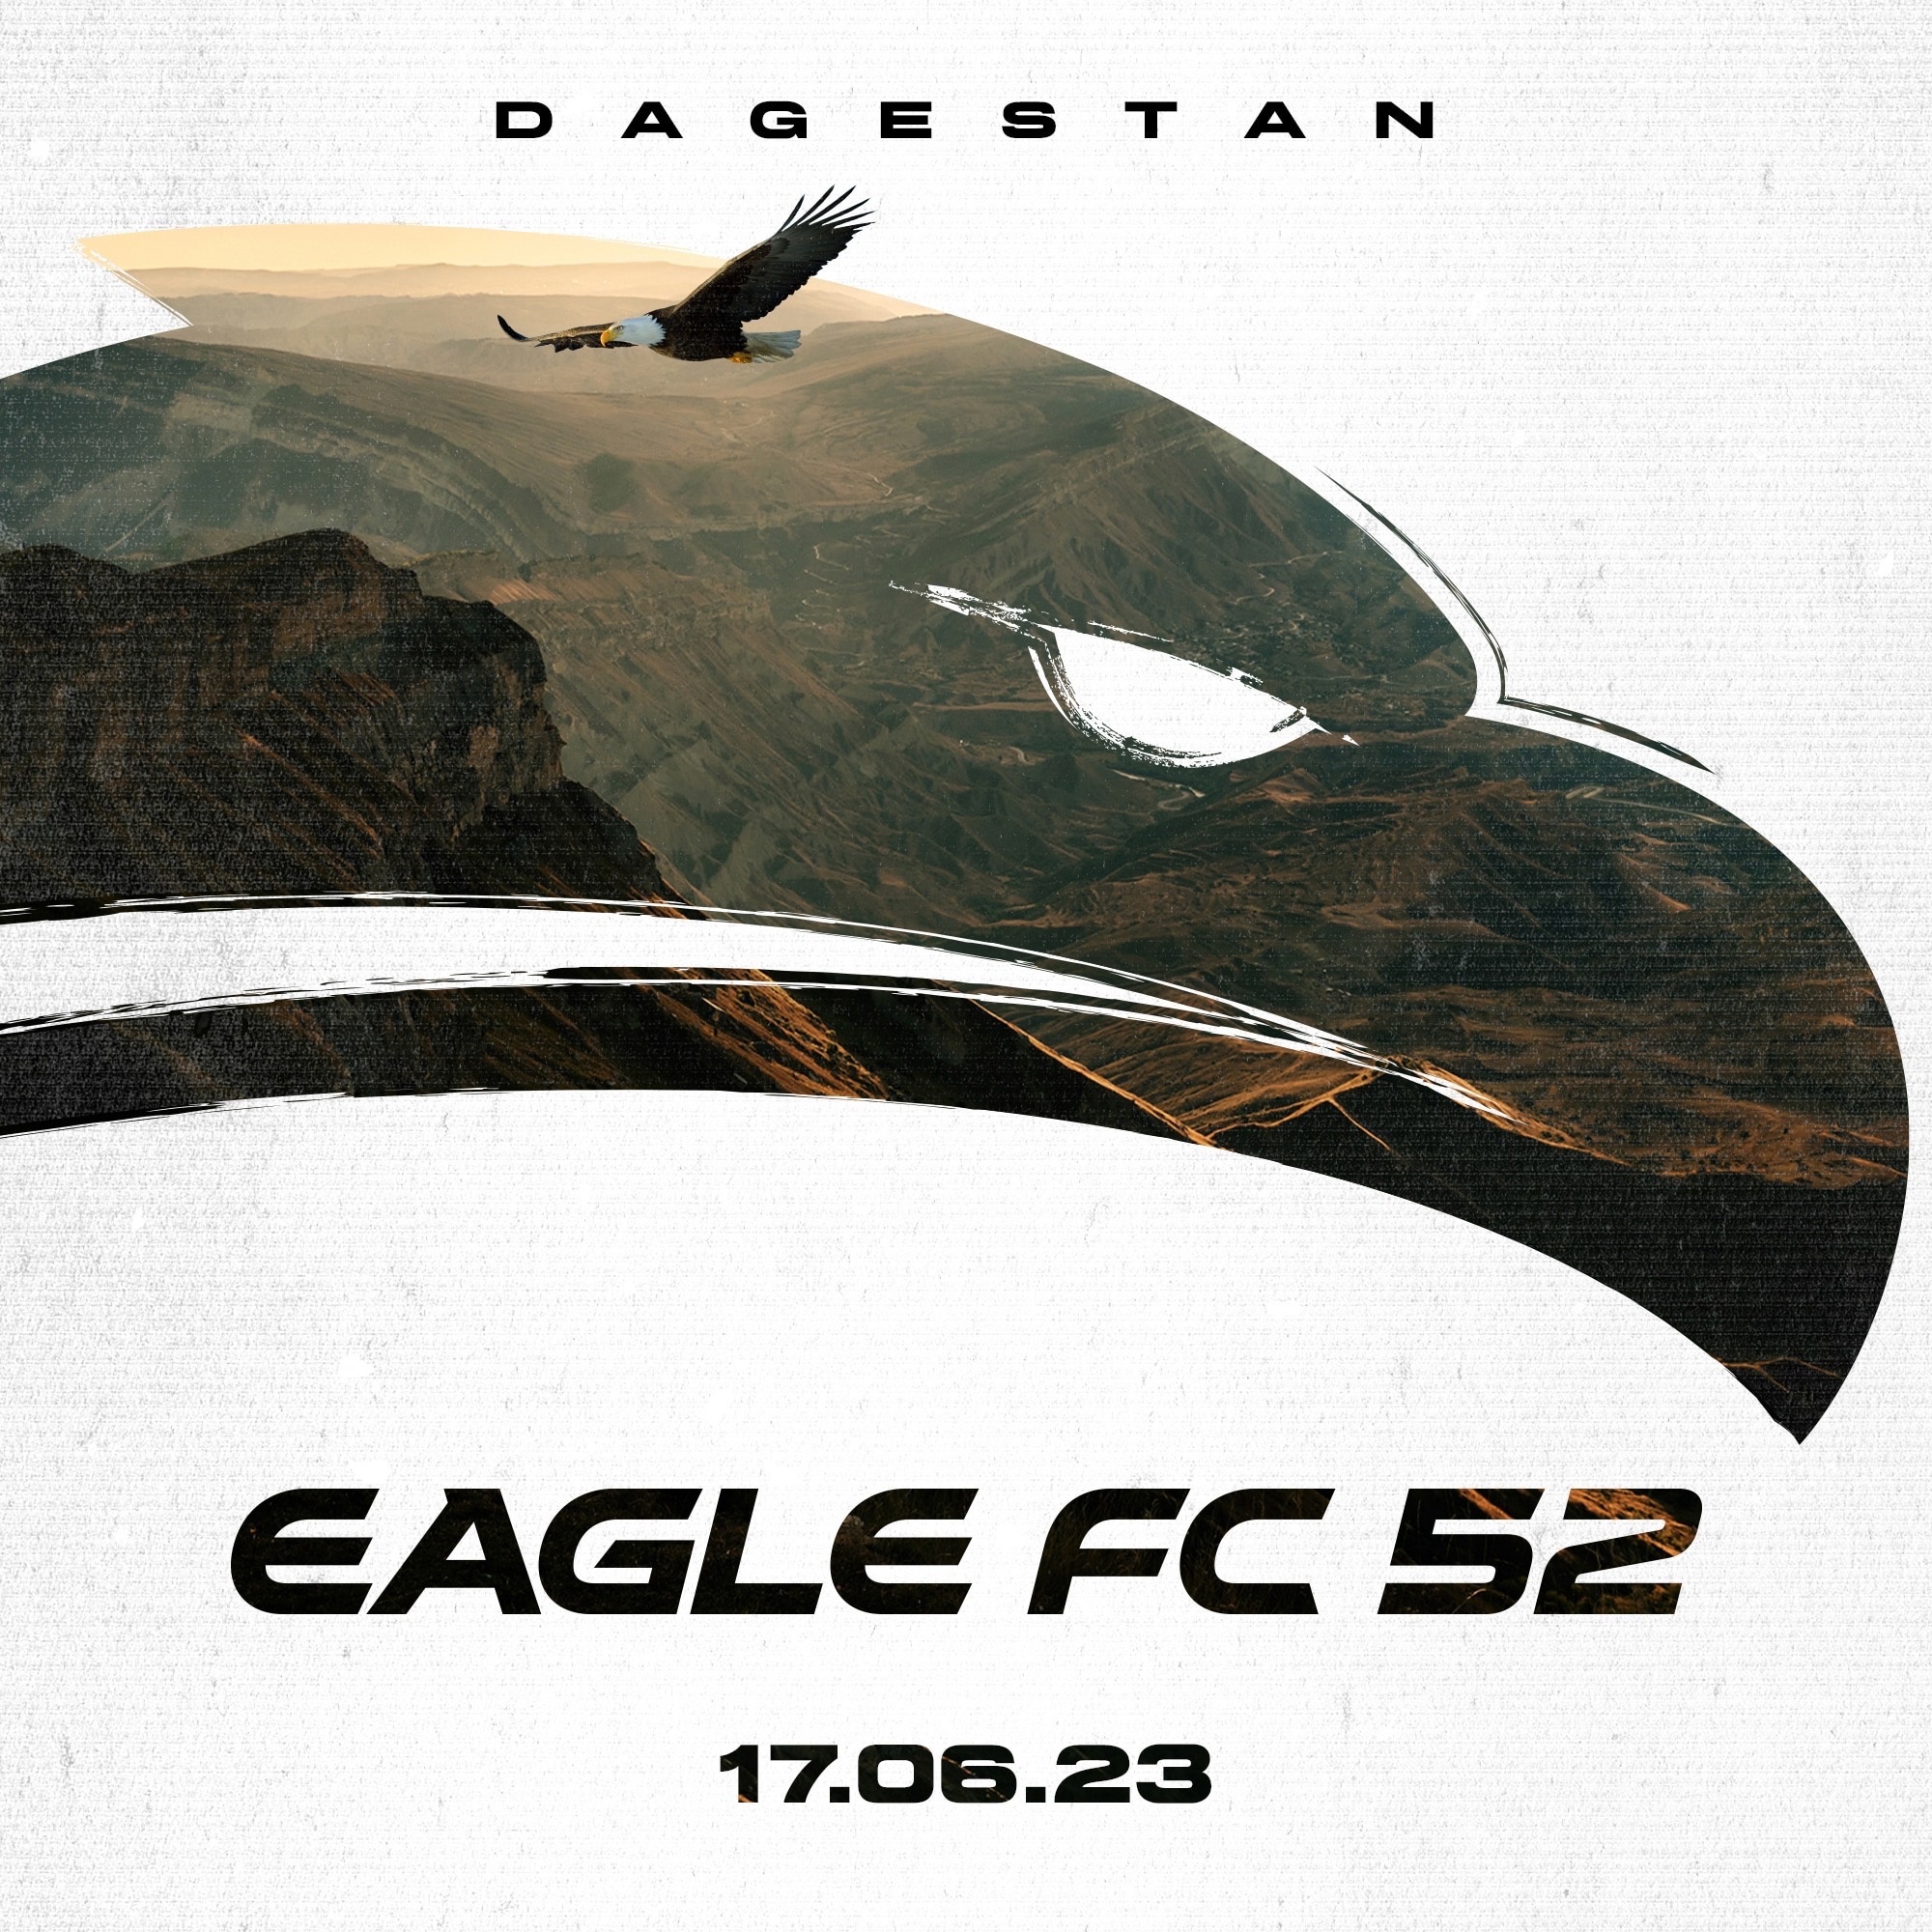 Турнир Eagle FC 52 пройдет в Дагестане